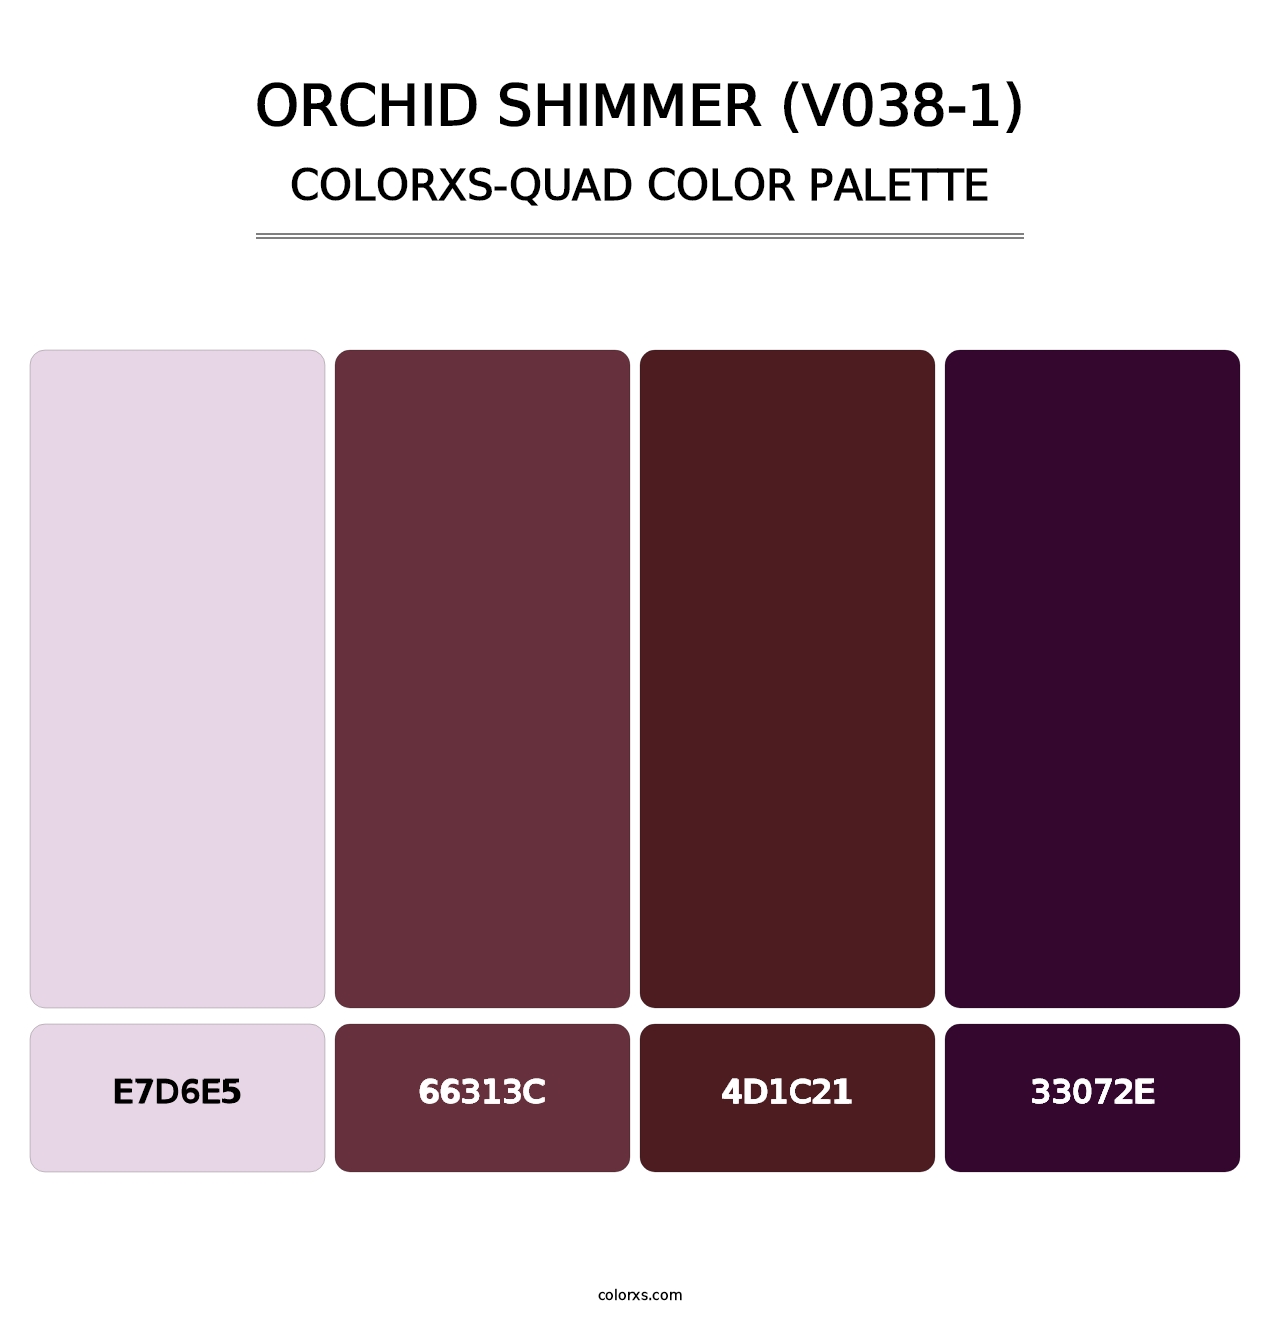 Orchid Shimmer (V038-1) - Colorxs Quad Palette